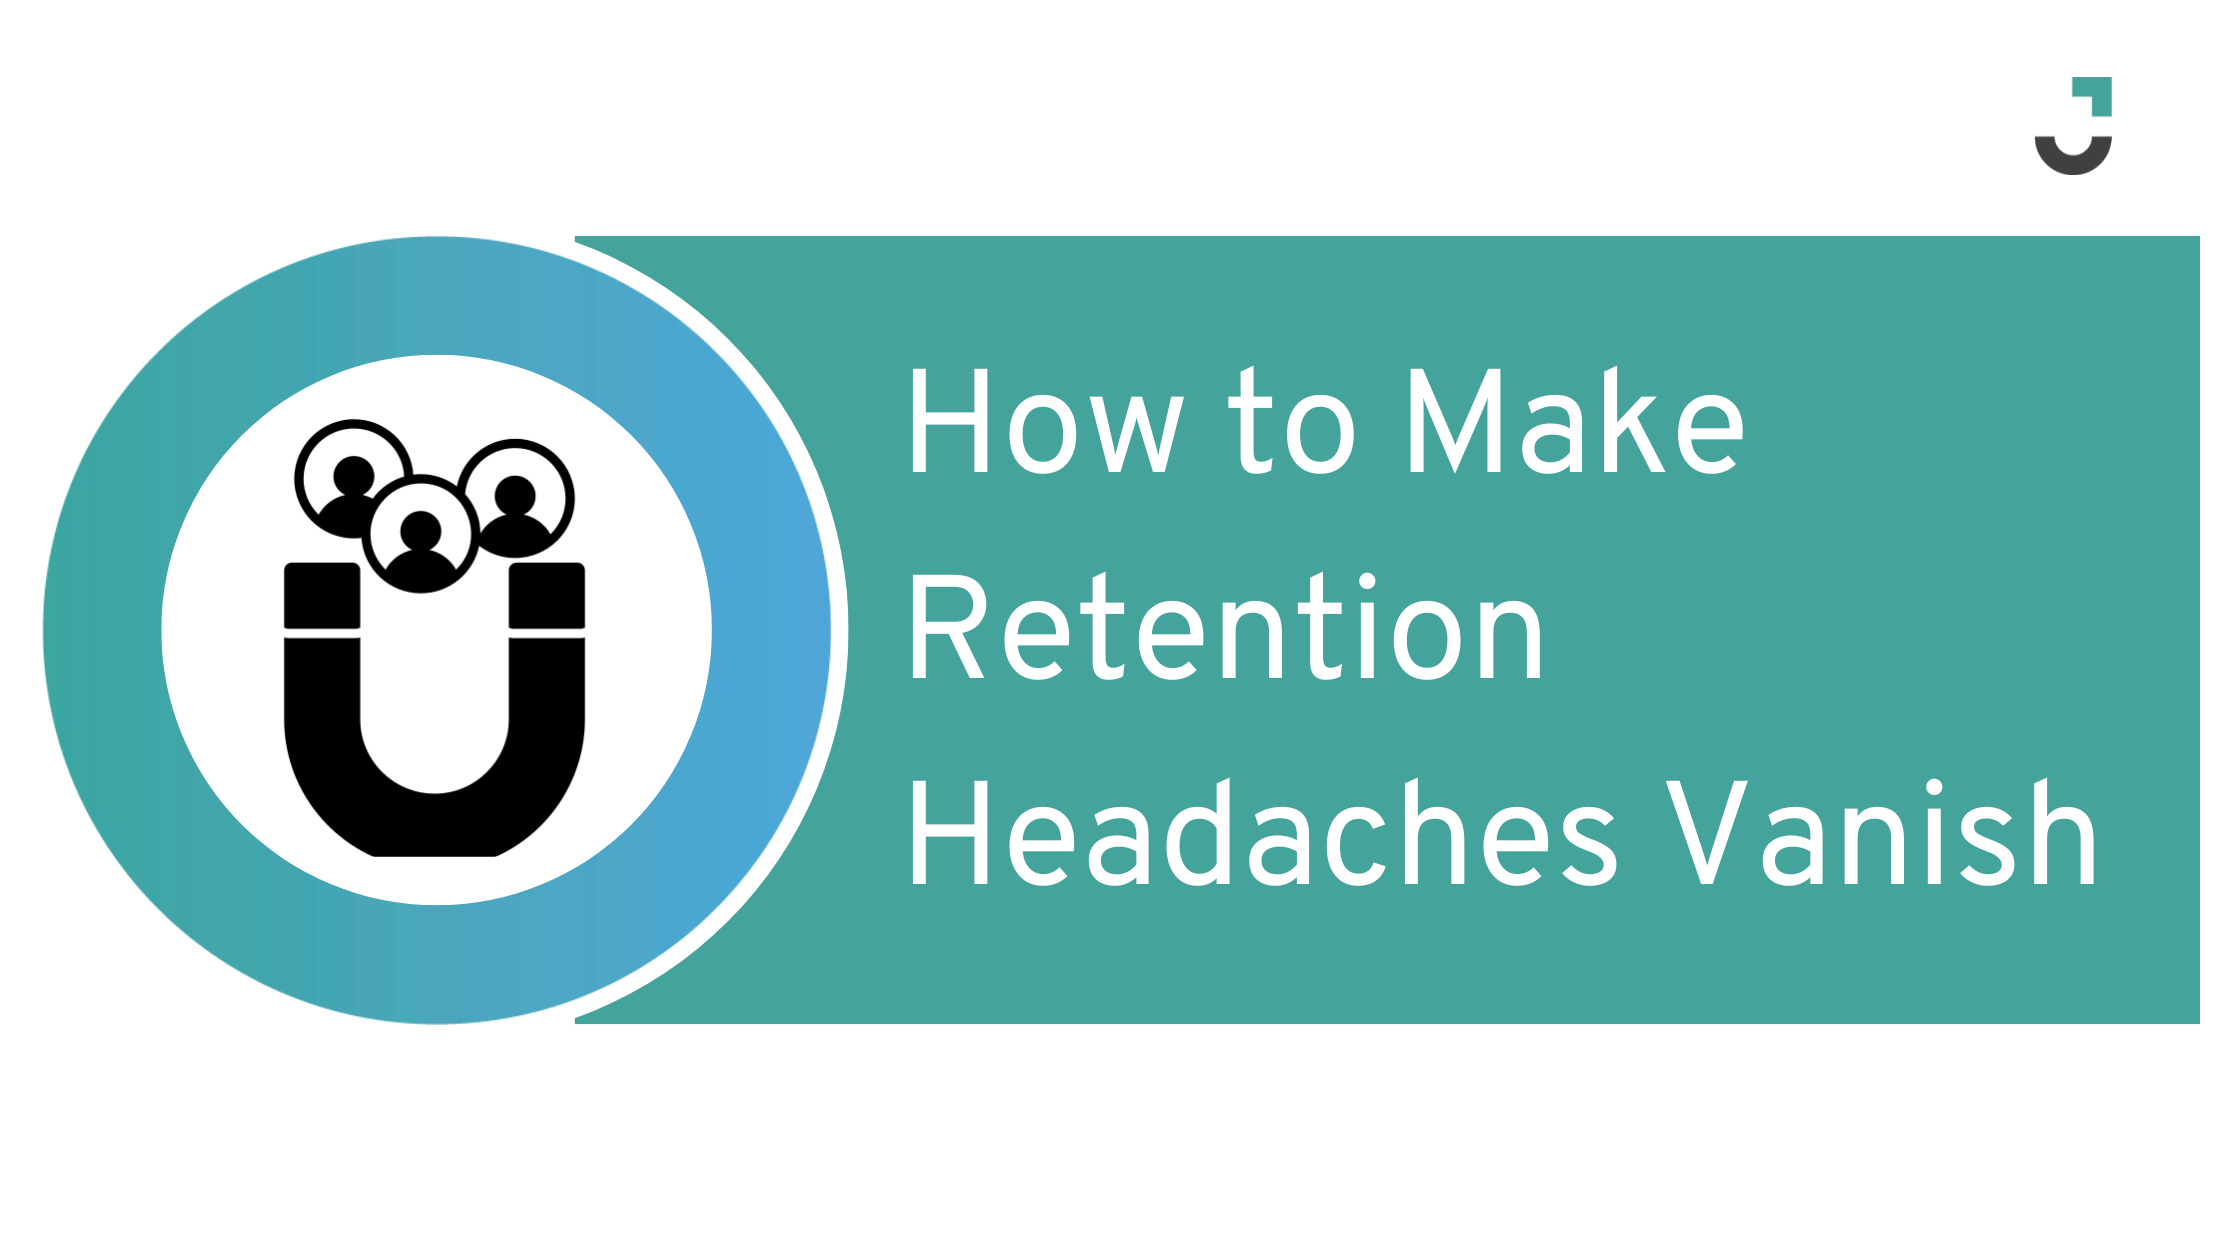 How to Make Retention Headaches Vanish